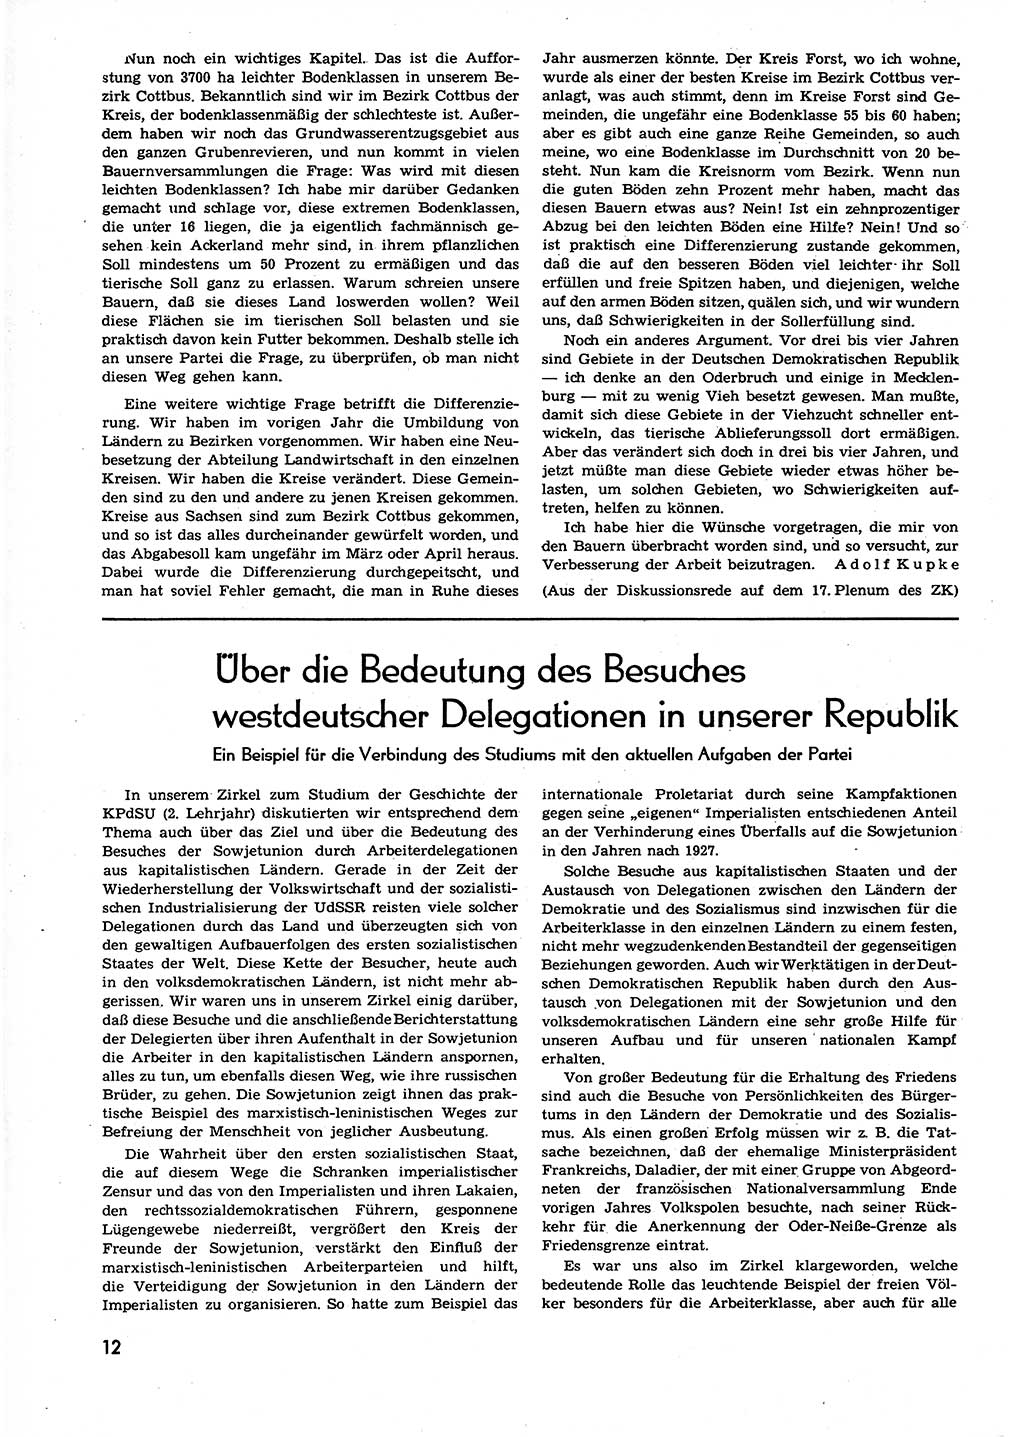 Neuer Weg (NW), Organ des Zentralkomitees (ZK) der SED (Sozialistische Einheitspartei Deutschlands) für alle Parteiarbeiter, 9. Jahrgang [Deutsche Demokratische Republik (DDR)] 1954, Heft 4/12 (NW ZK SED DDR 1954, H. 4/12)